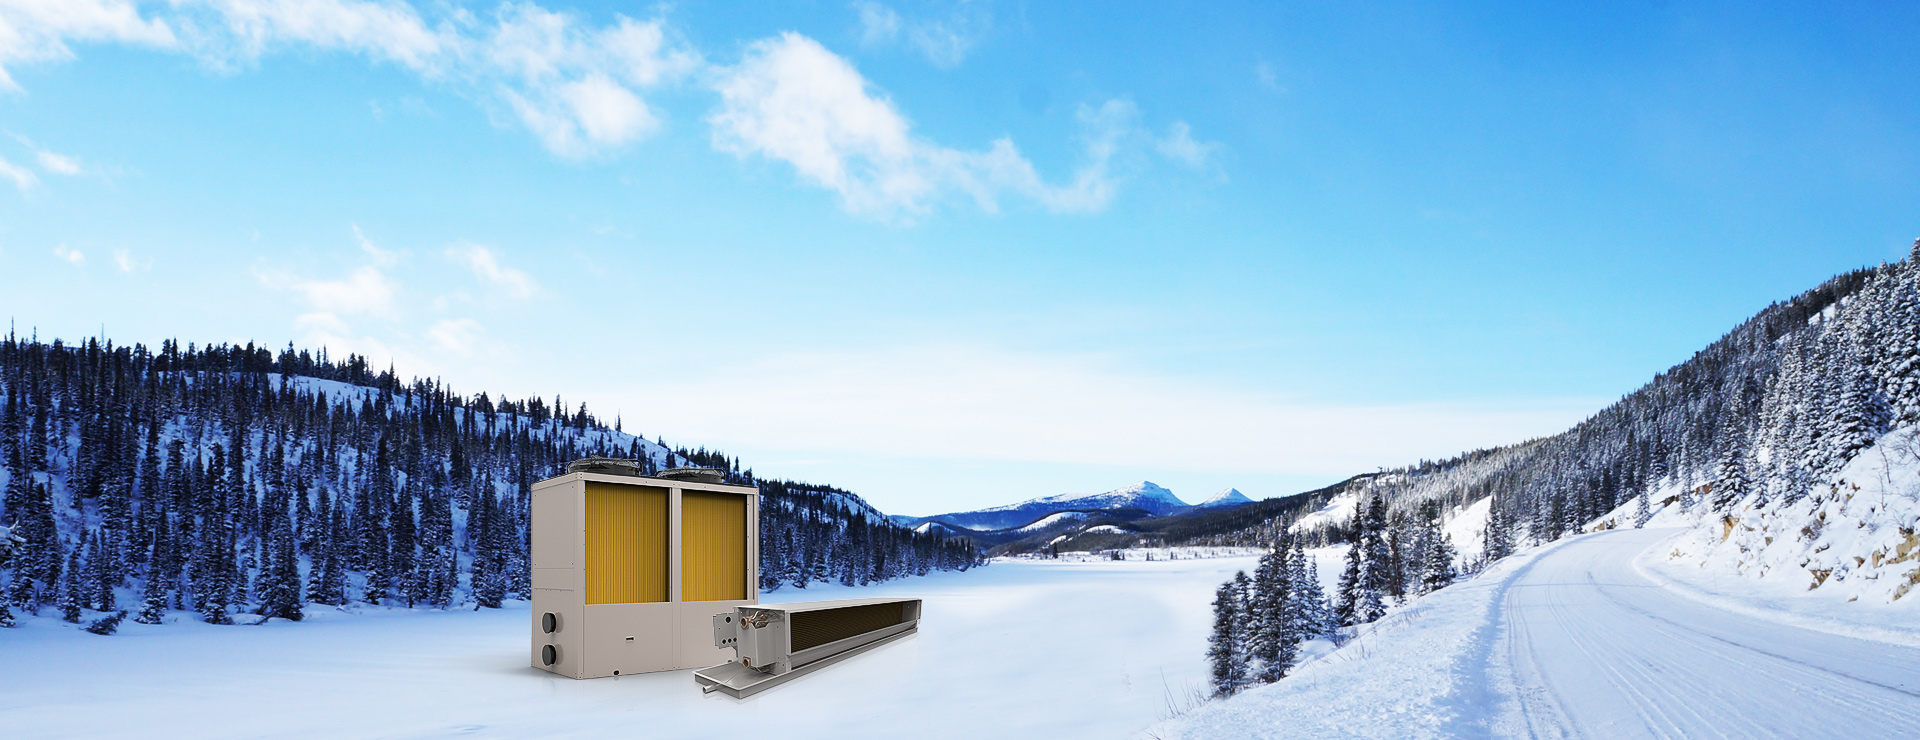 超低溫北極星(採暖、熱水) + 末端：專門針對寒冷地區採暖和熱水需求設計，採暖熱水一機解決，即安全方便又經濟節能。